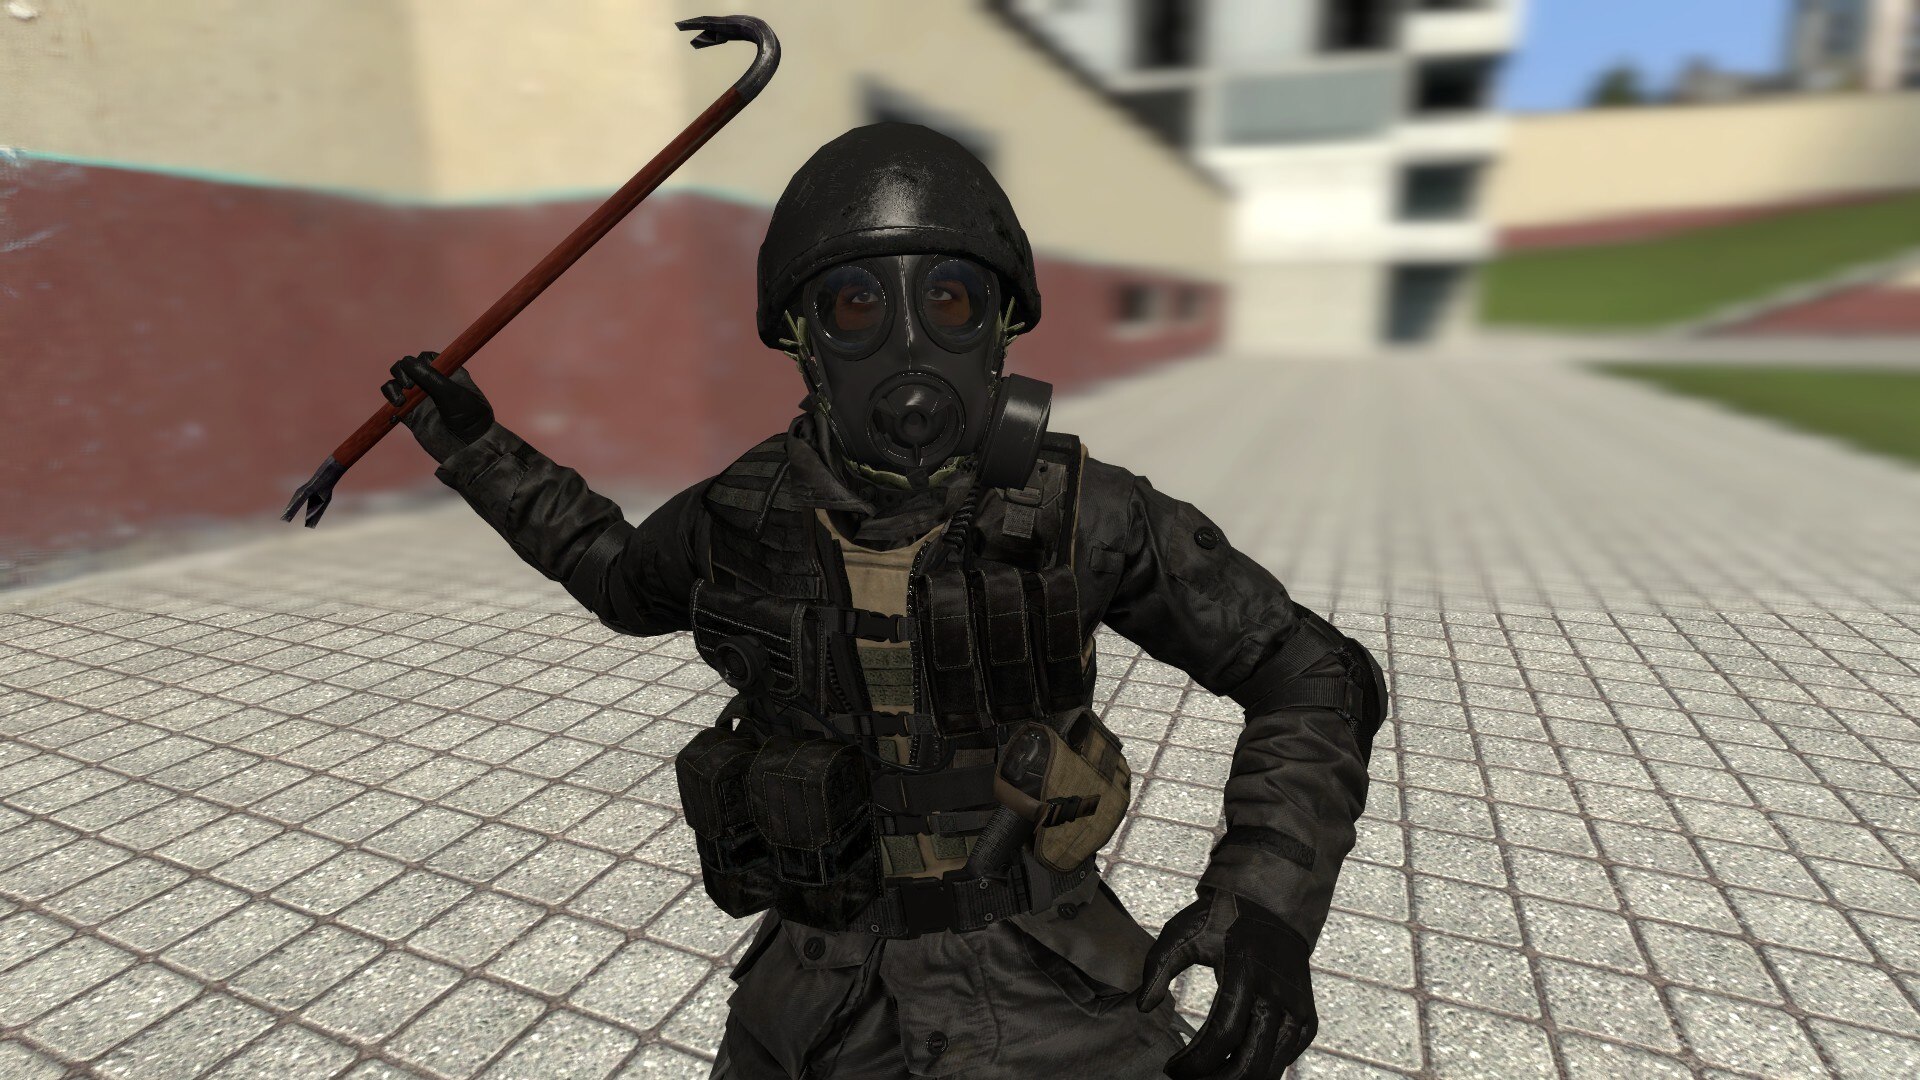 COD 4 Modern warfare (2007) SAS outfits i tried to recreate : r